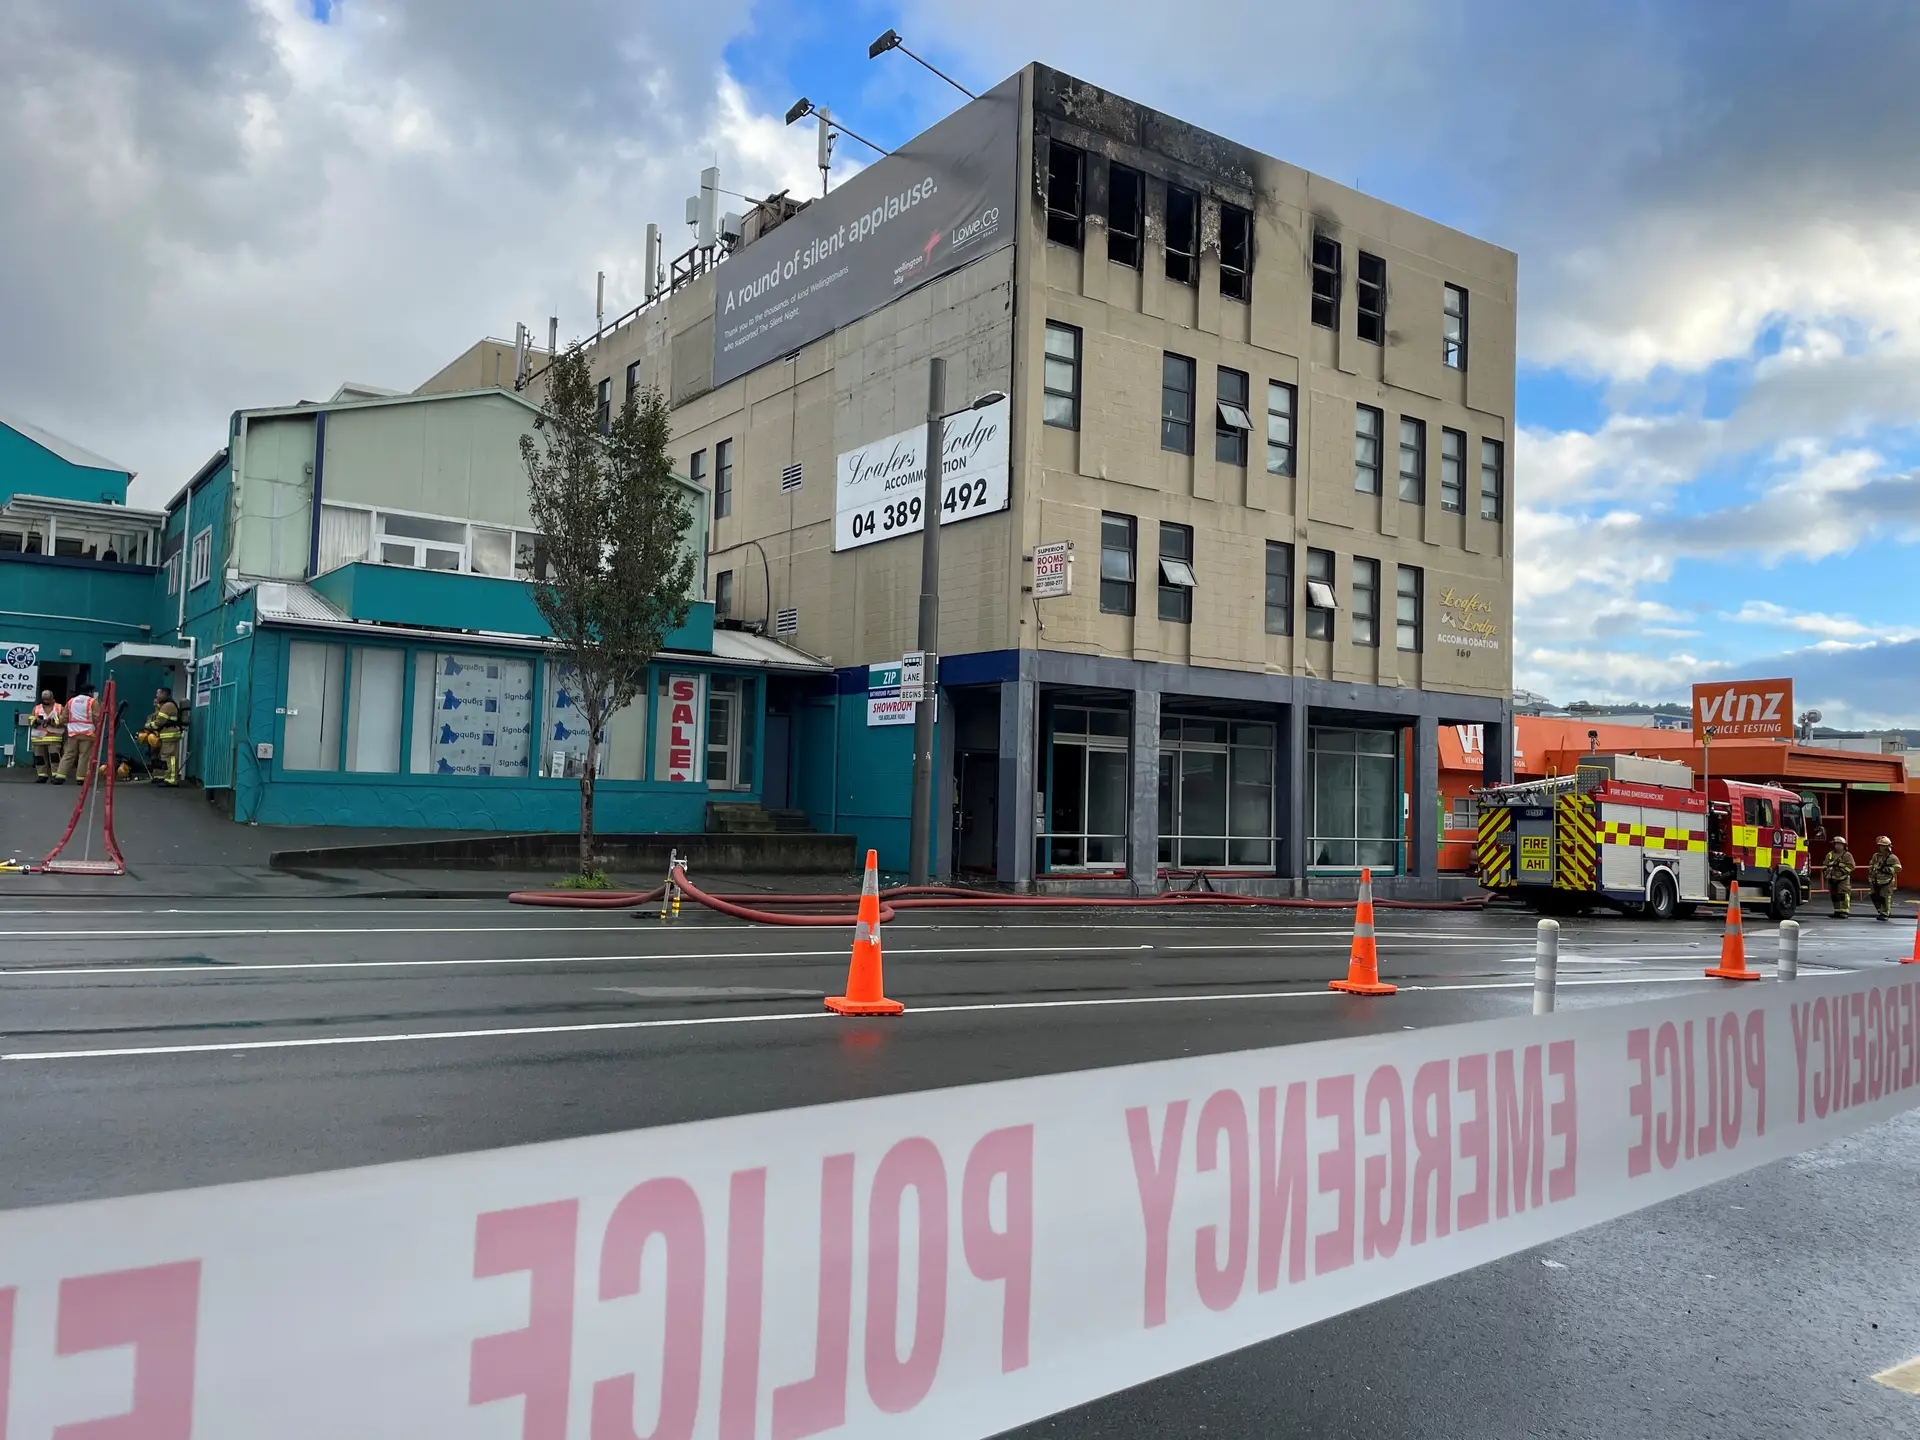 Incêndio num albergue em Wellington, na Nova Zelândia, matou 6 pessoas e feriu outras cinco